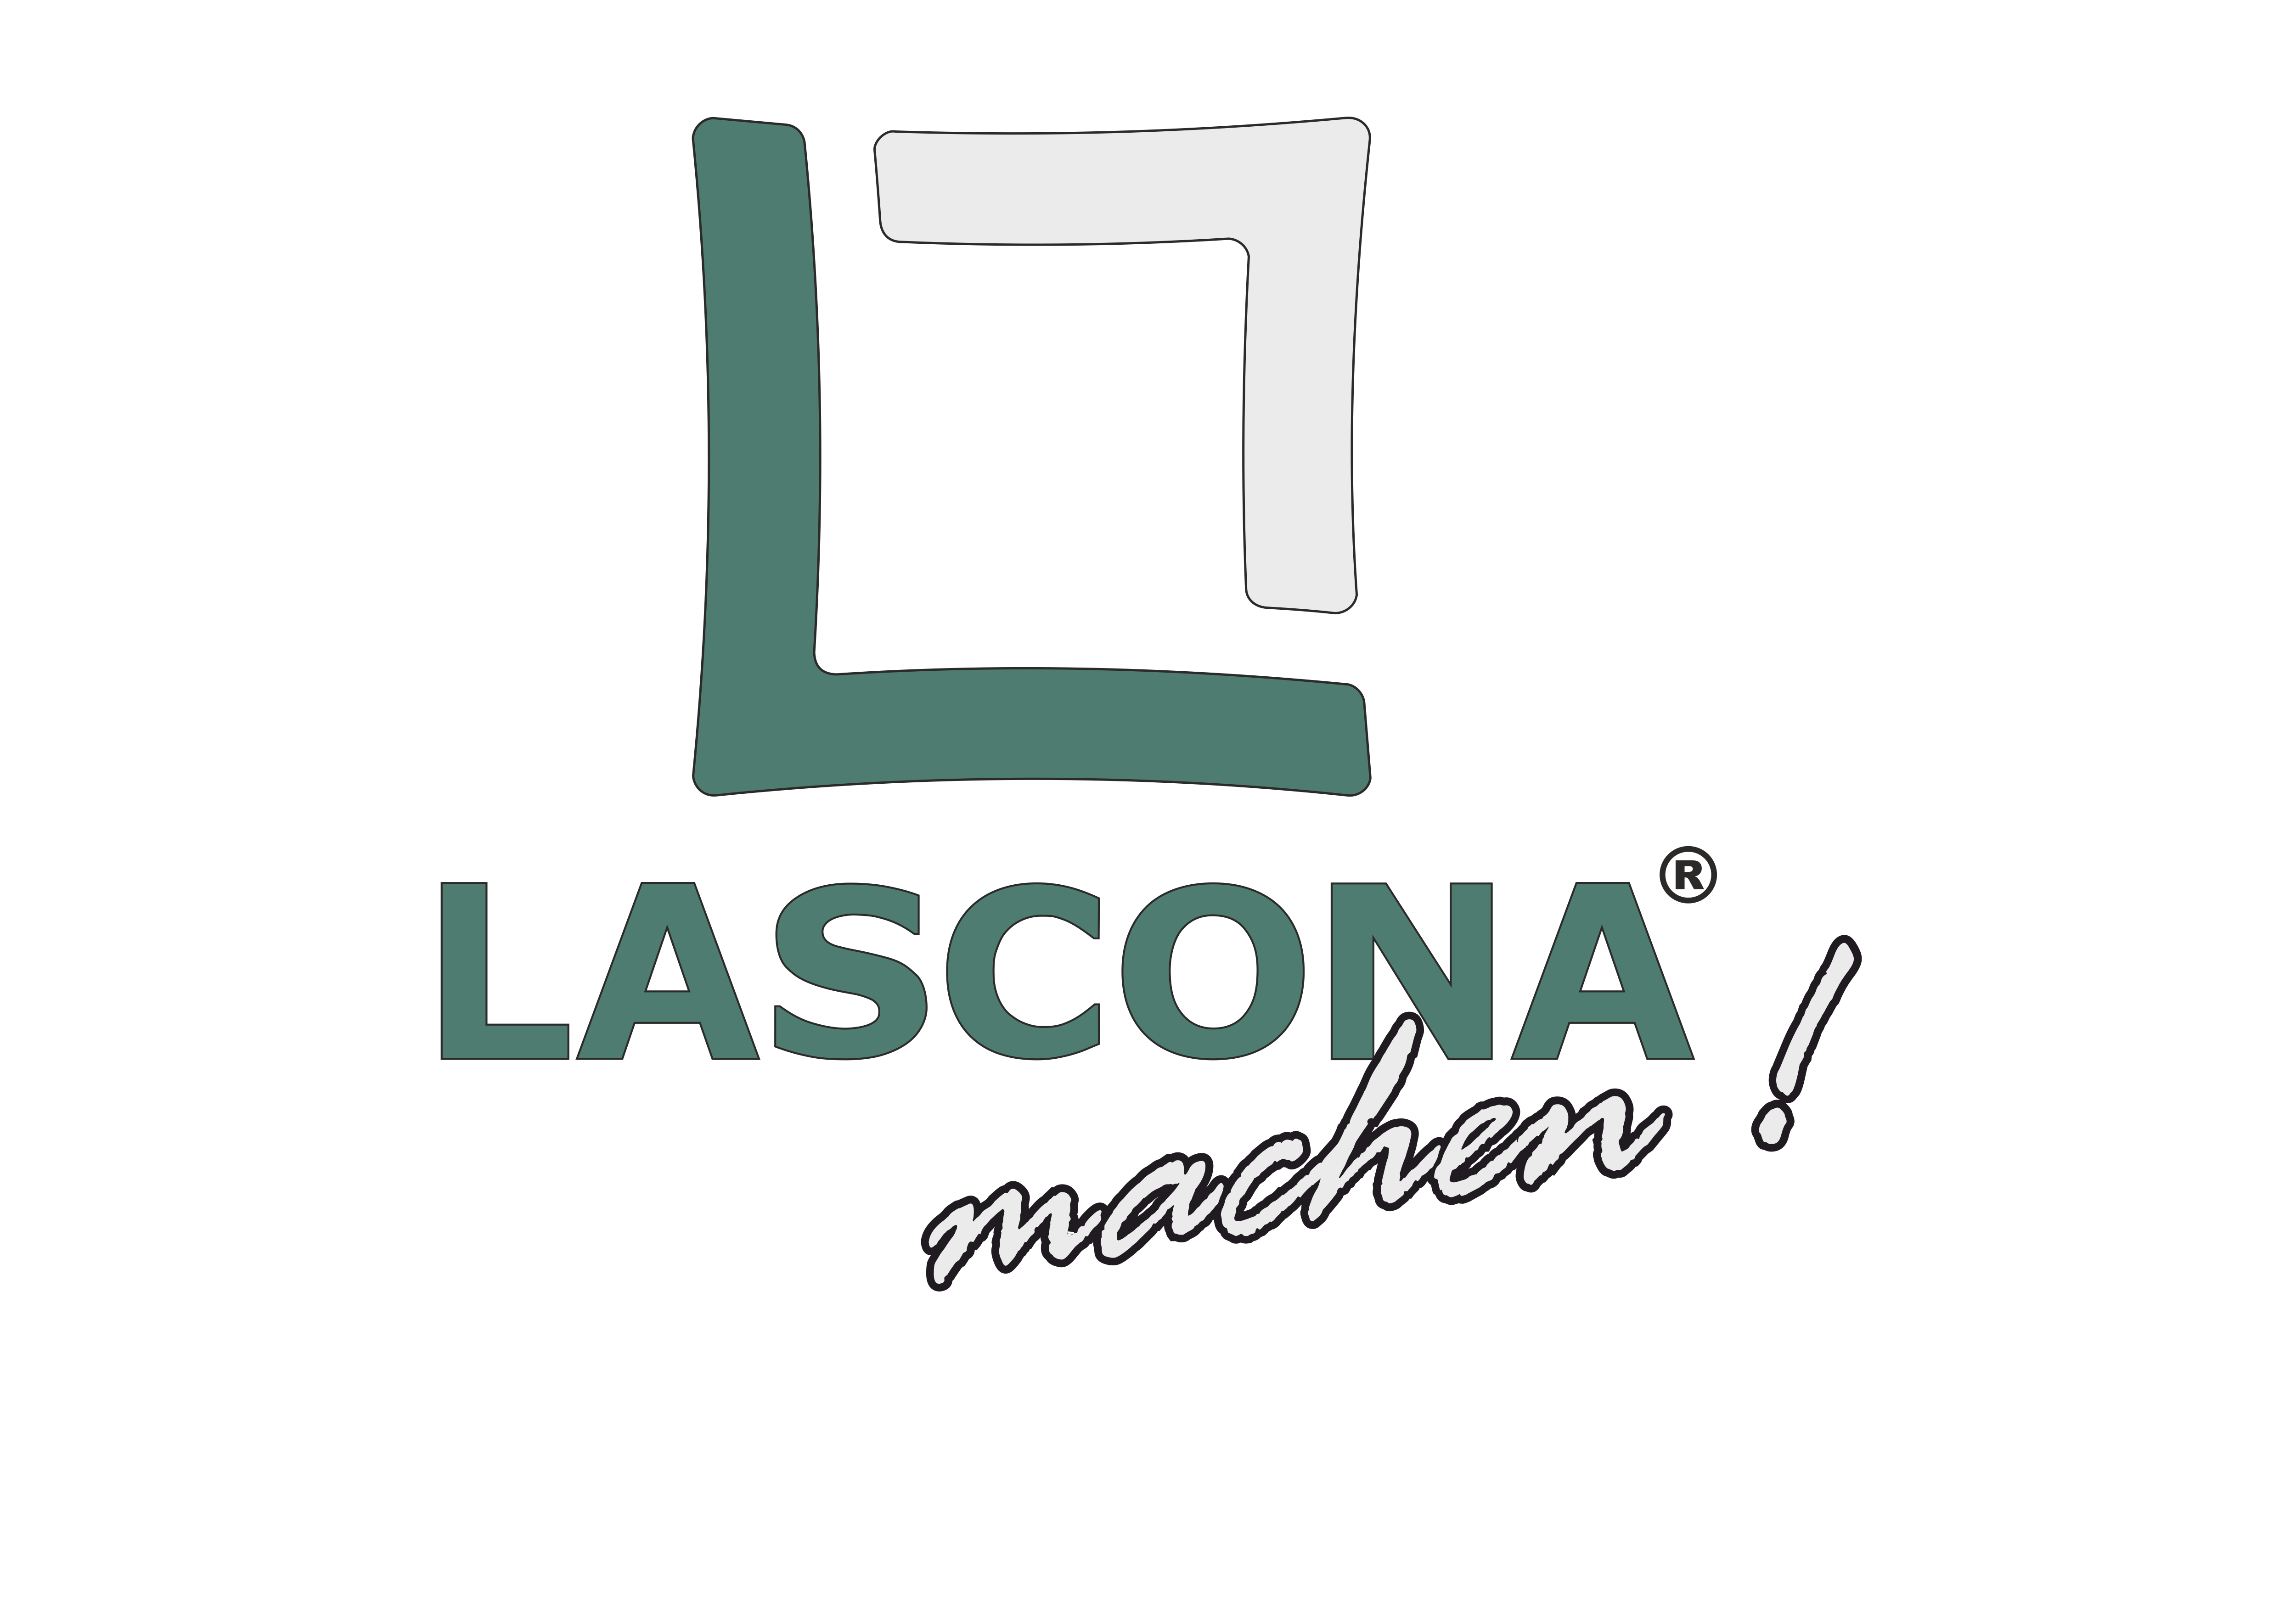 Lascona machen logo